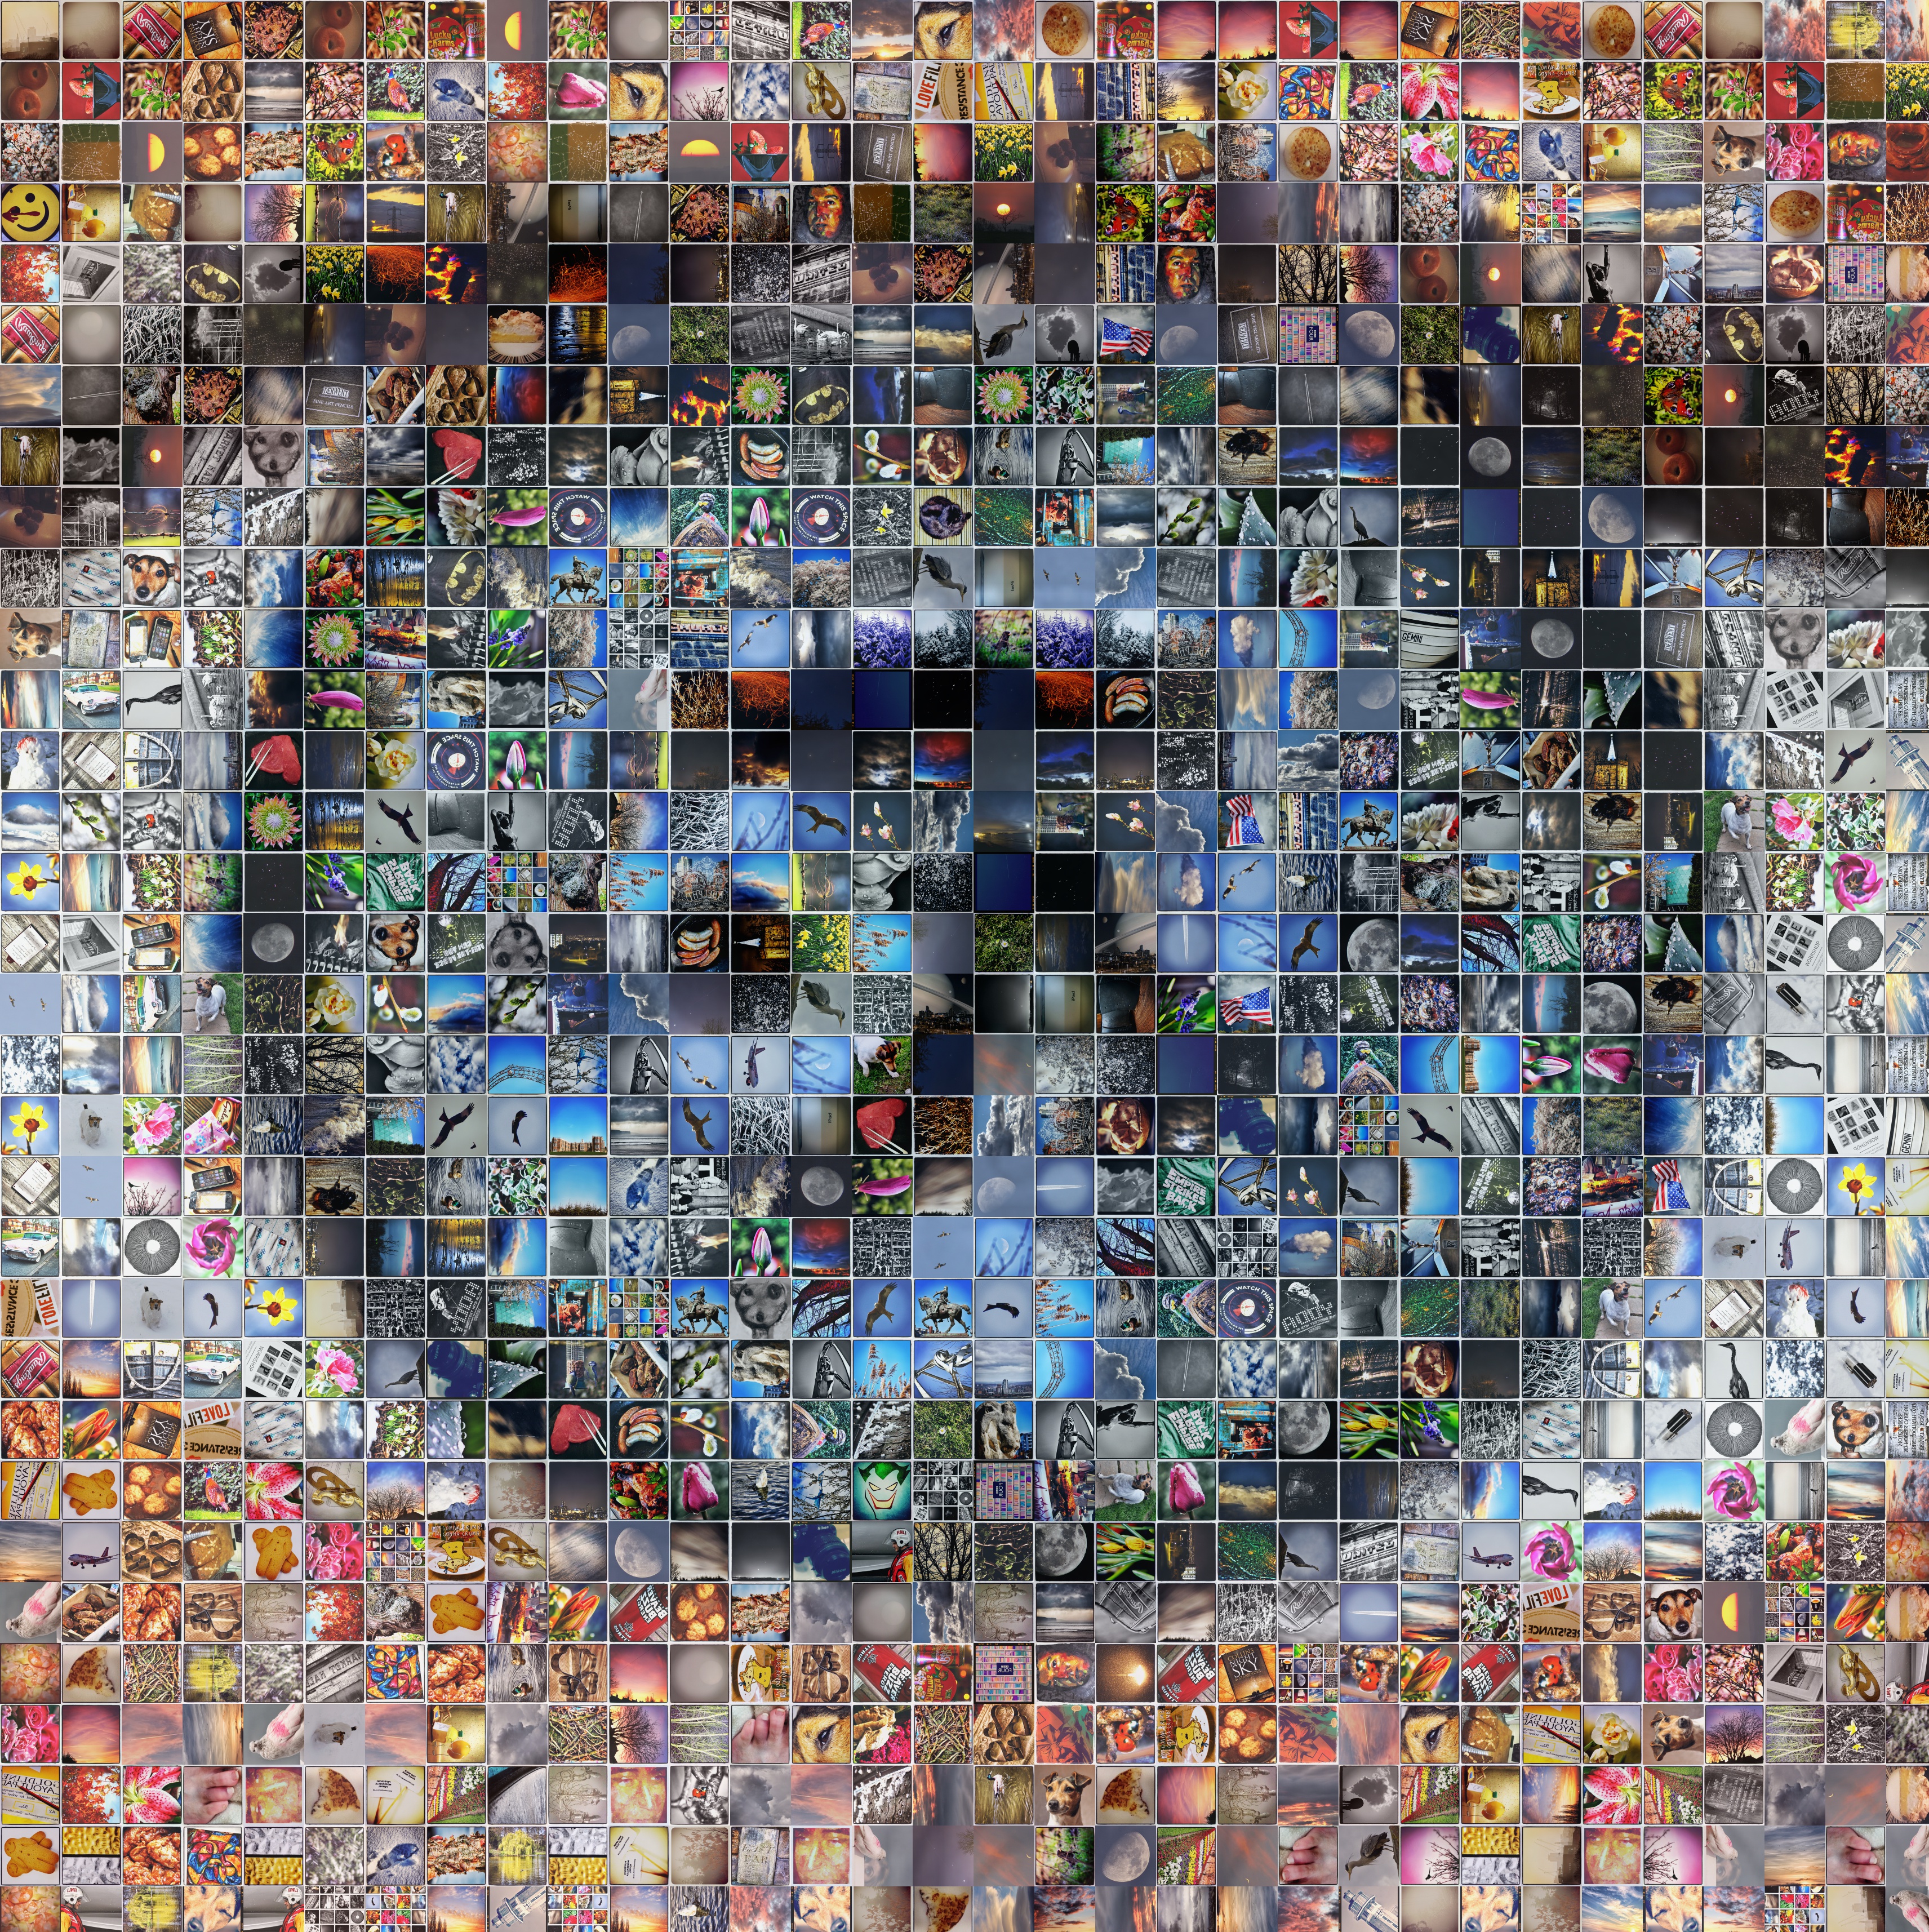 Premium digital mosaic hardcore images